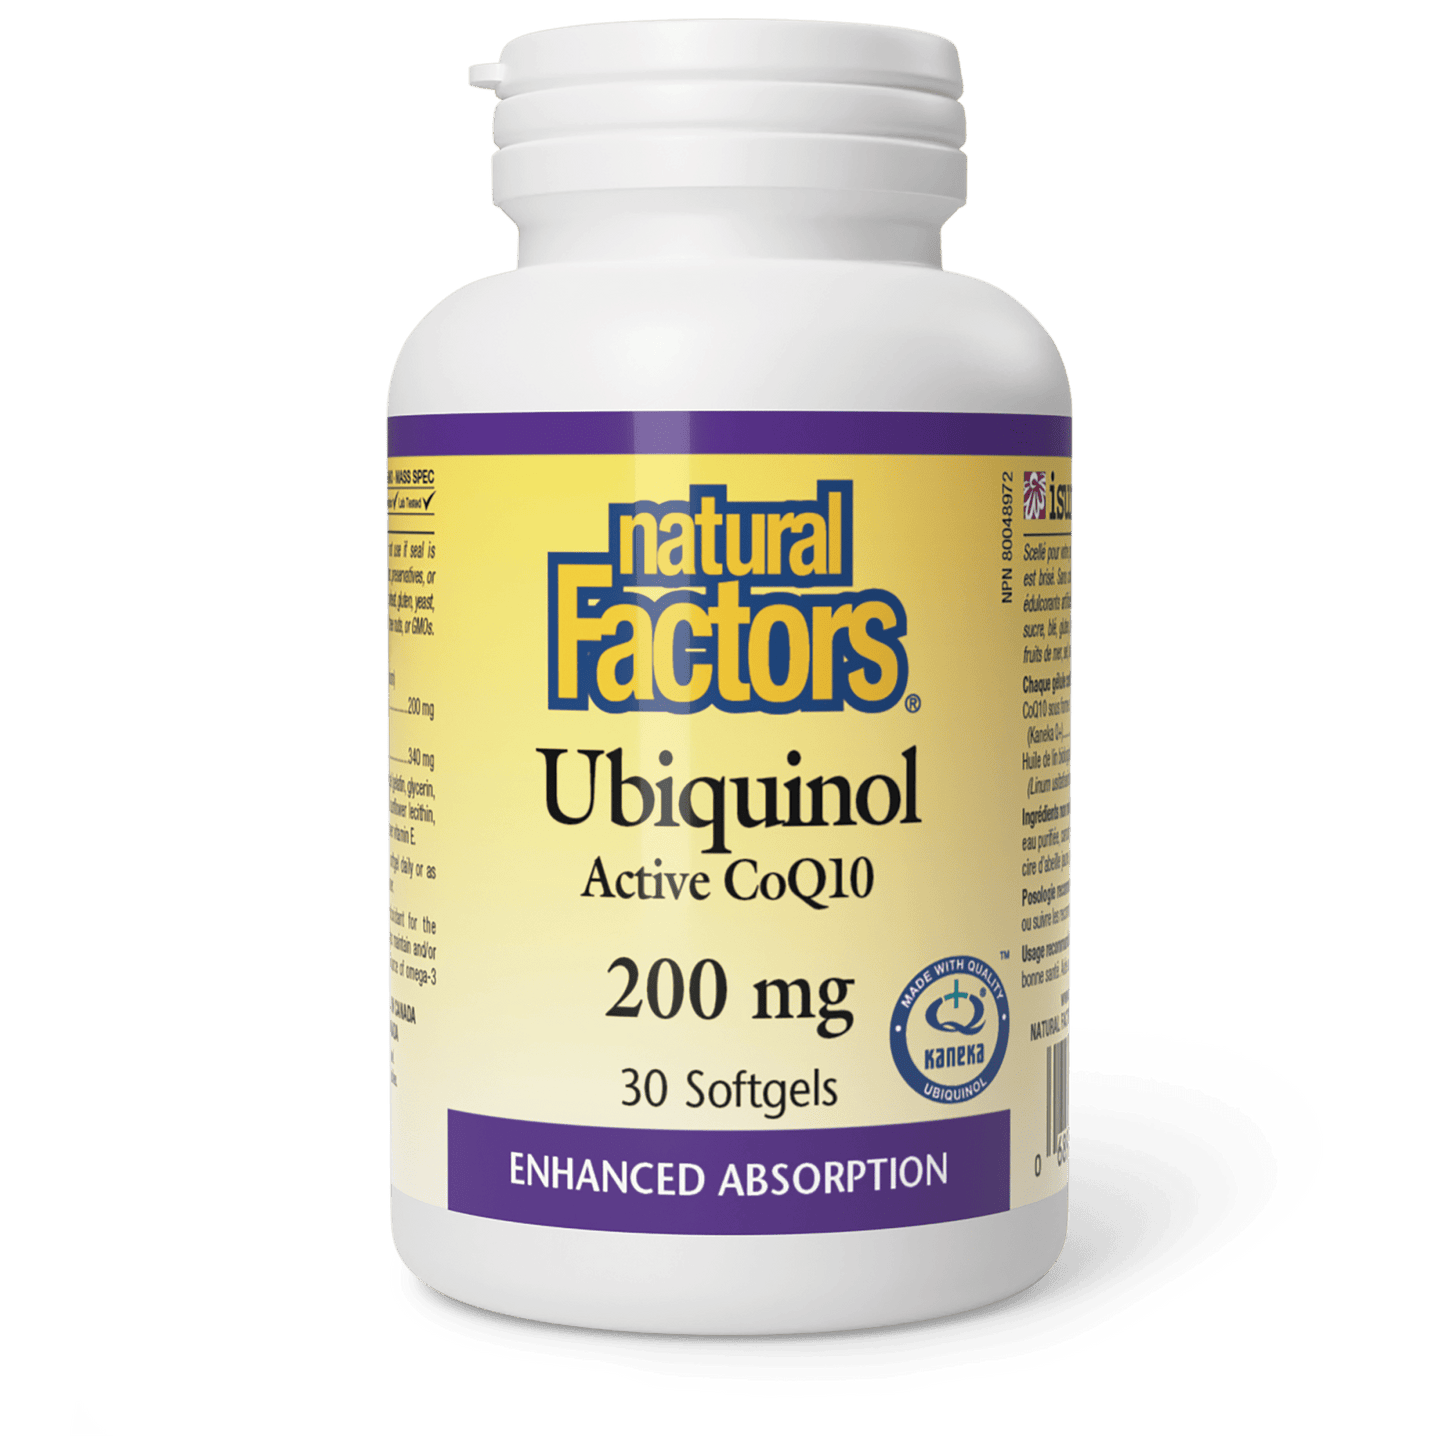 Ubiquinol Active CoQ10 200 mg, Natural Factors|v|image|20729